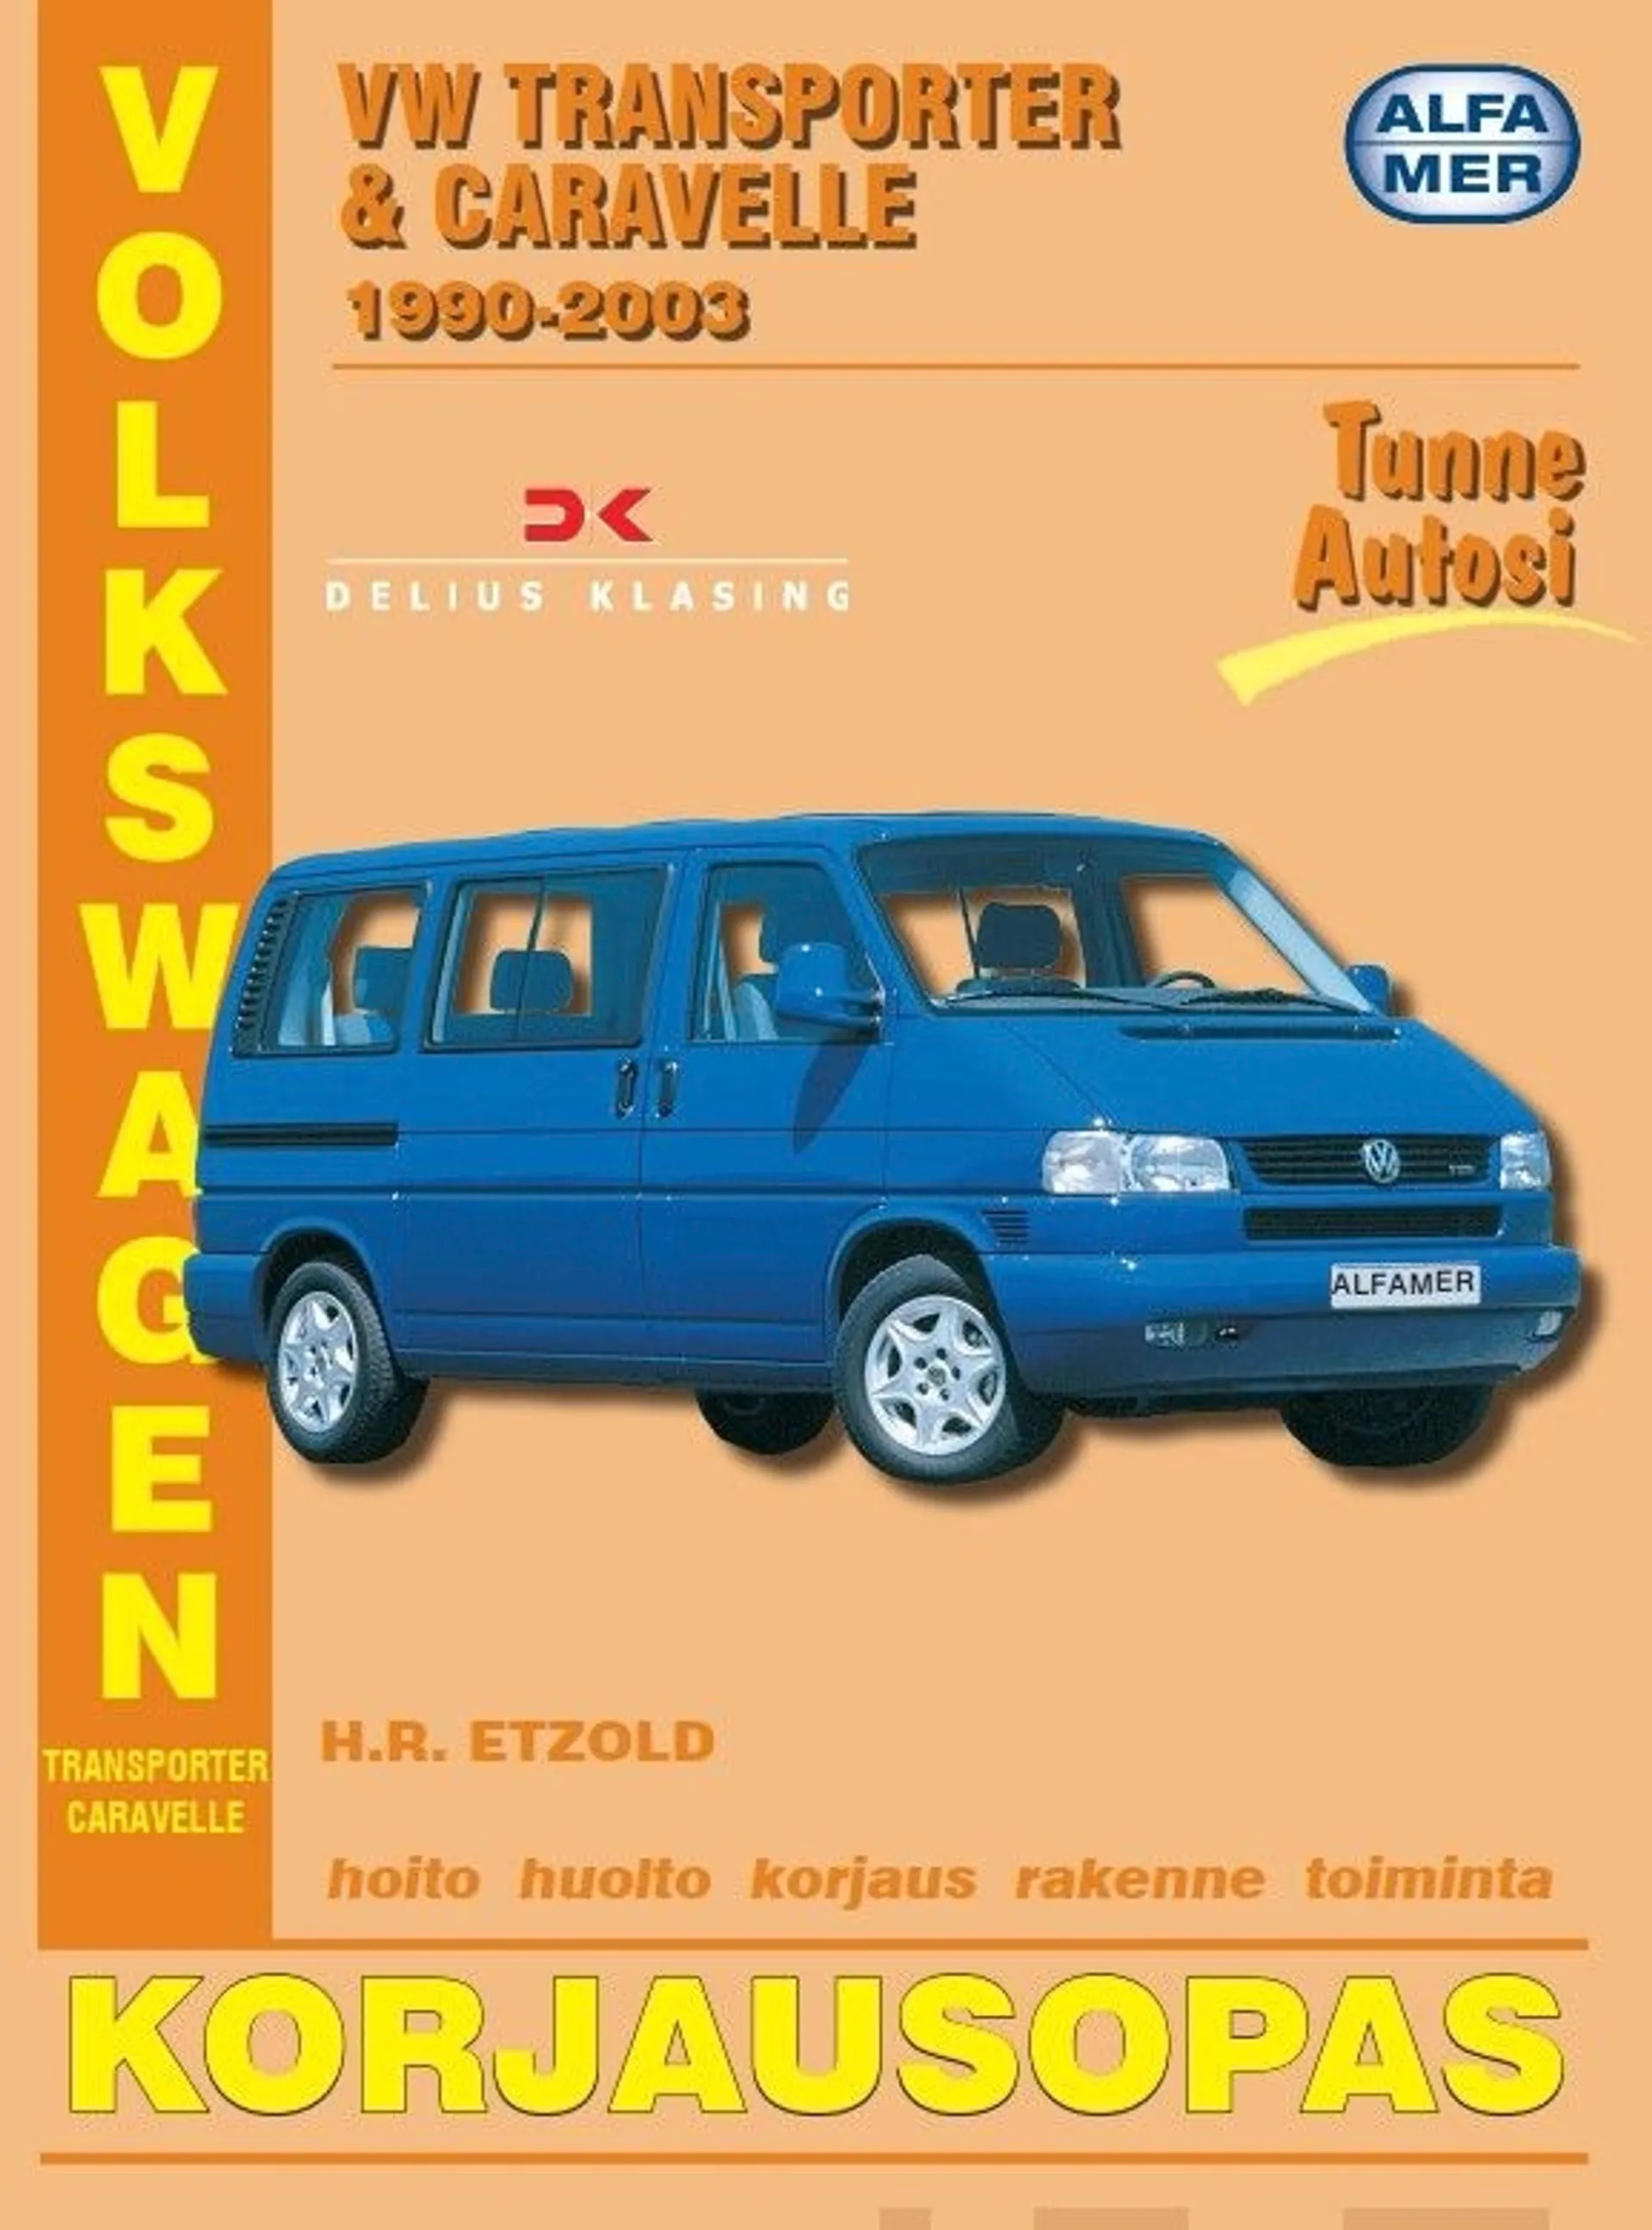 Mauno, Volkswagen Transporter & Carevelle 1990-2003 bensiini- ja dieselmallit